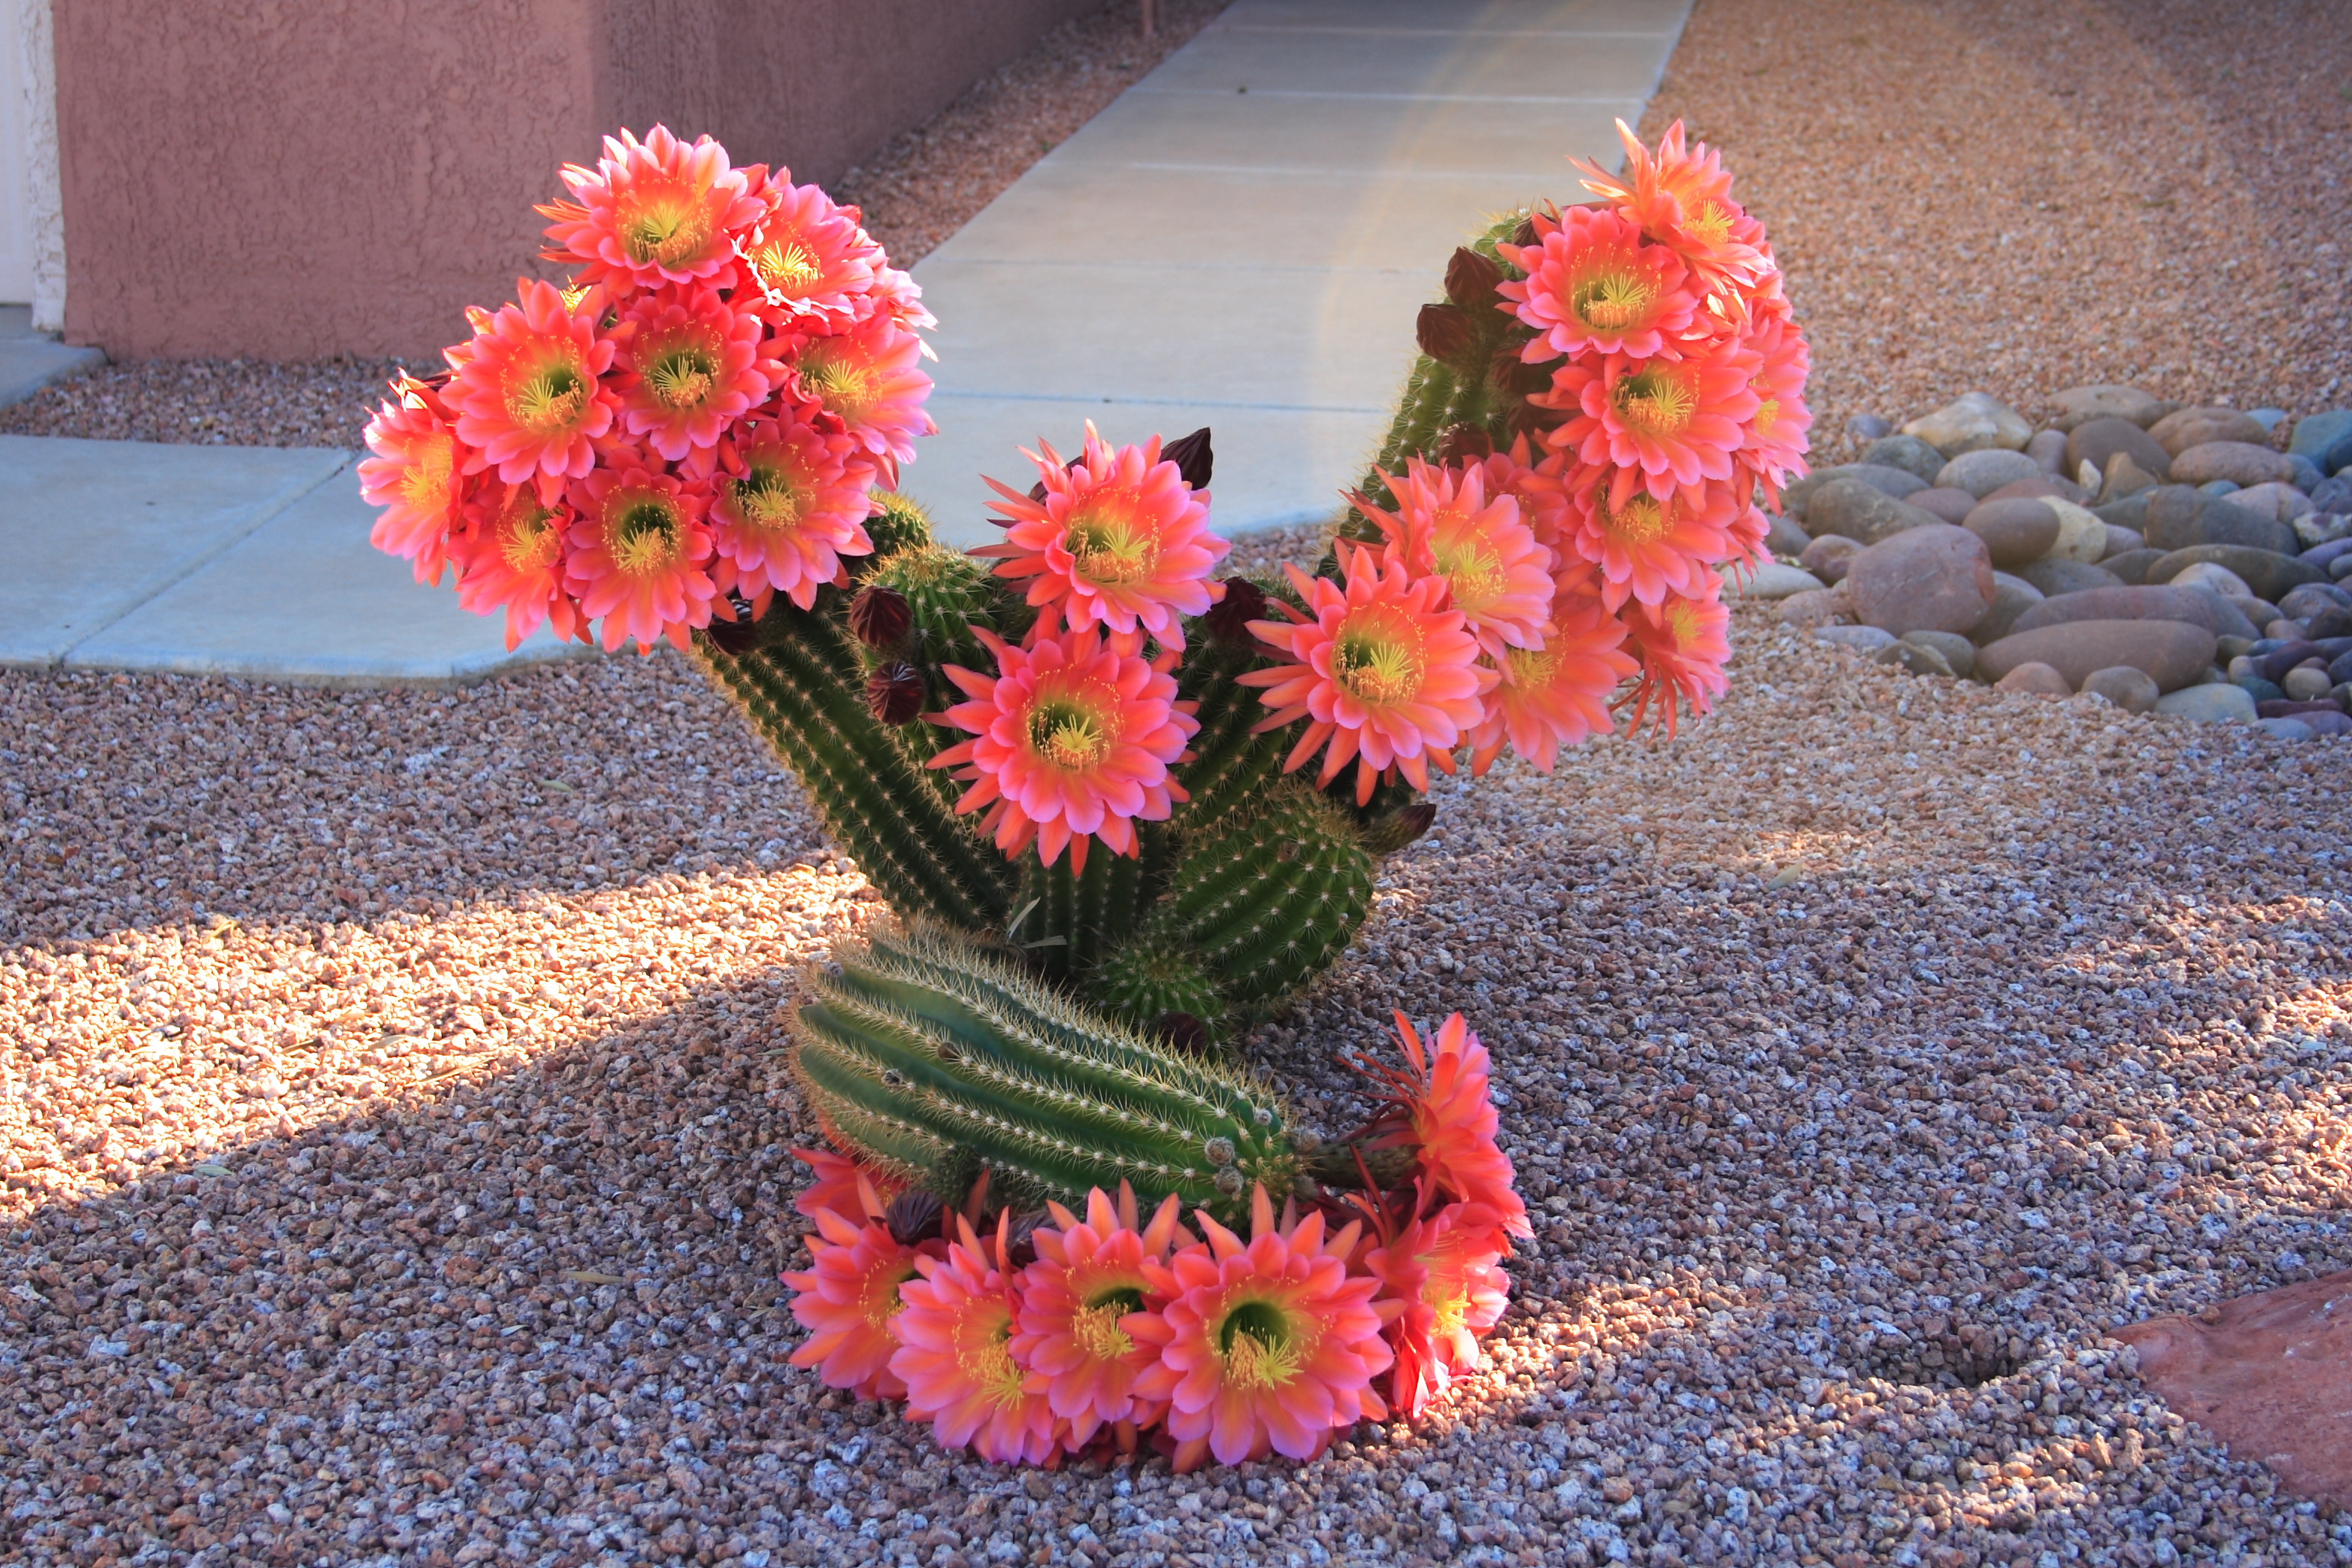 Flowering : Wonderful Cactus Flowers Blooming With Pink Flower On ...